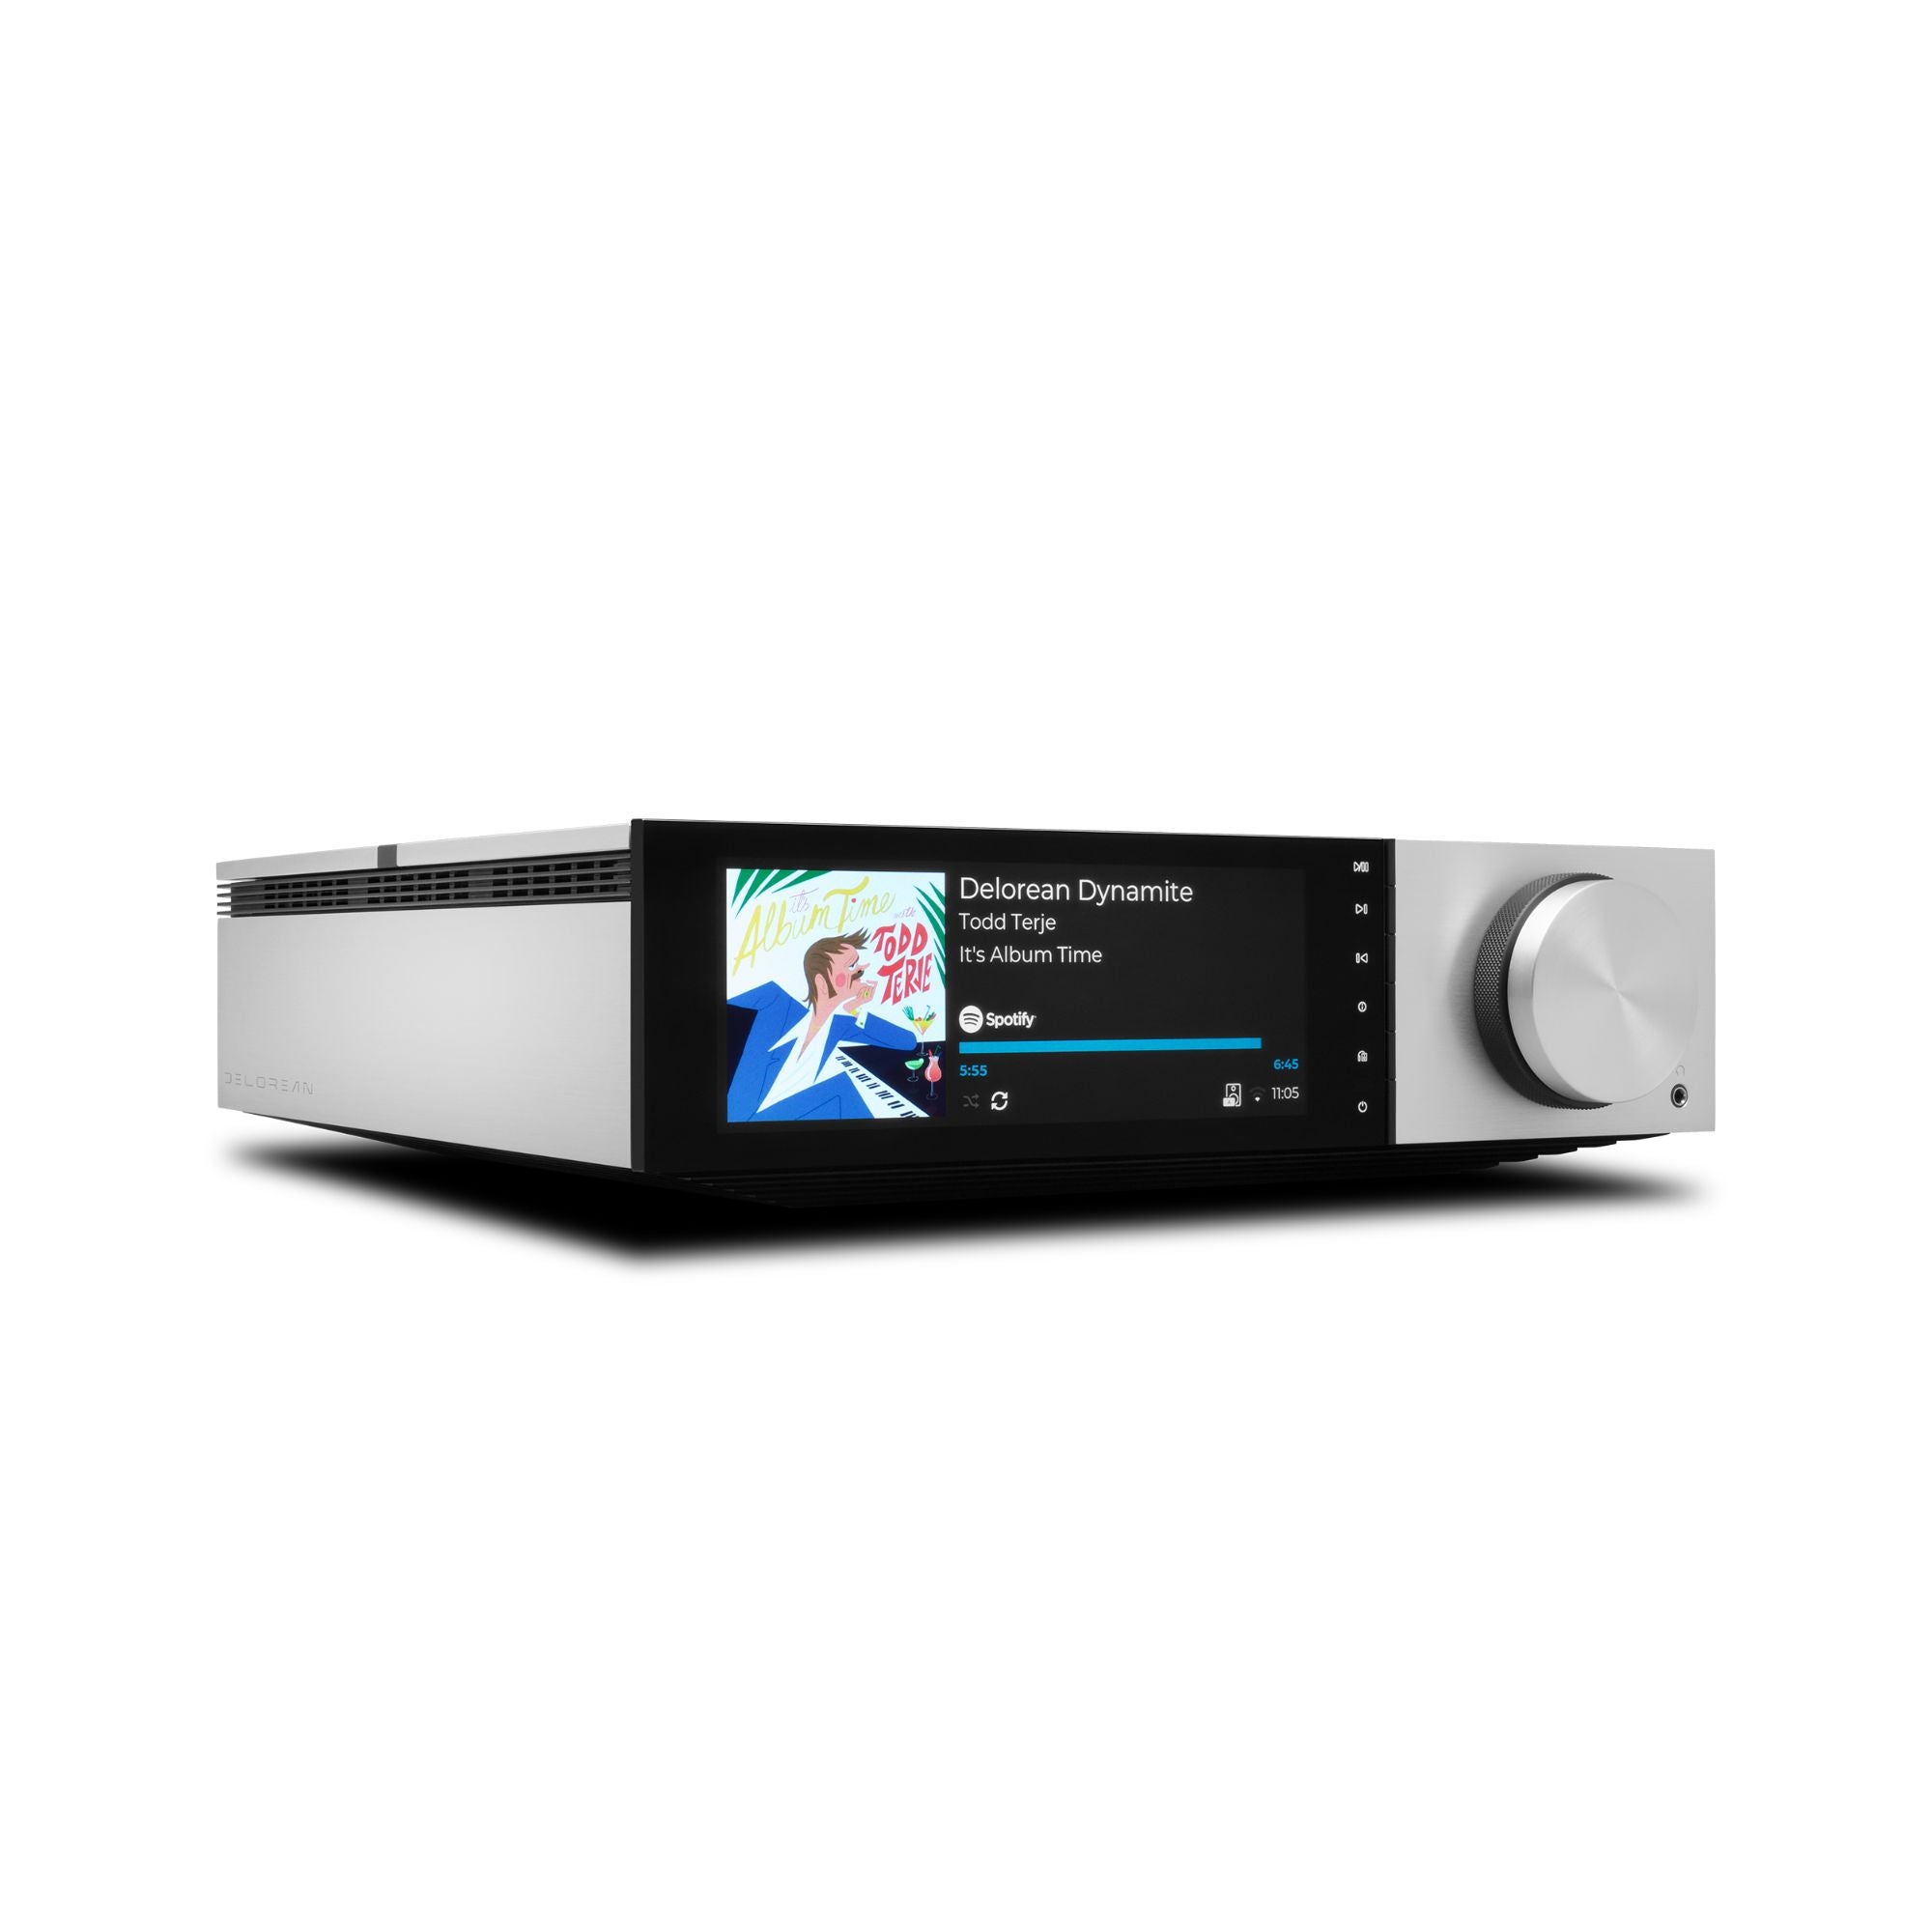 Cambridge Audio Evo 150 DeLorean Edition - Streaming Amplifier, Cambridge Audio, Network Audio Player - AVStore.in